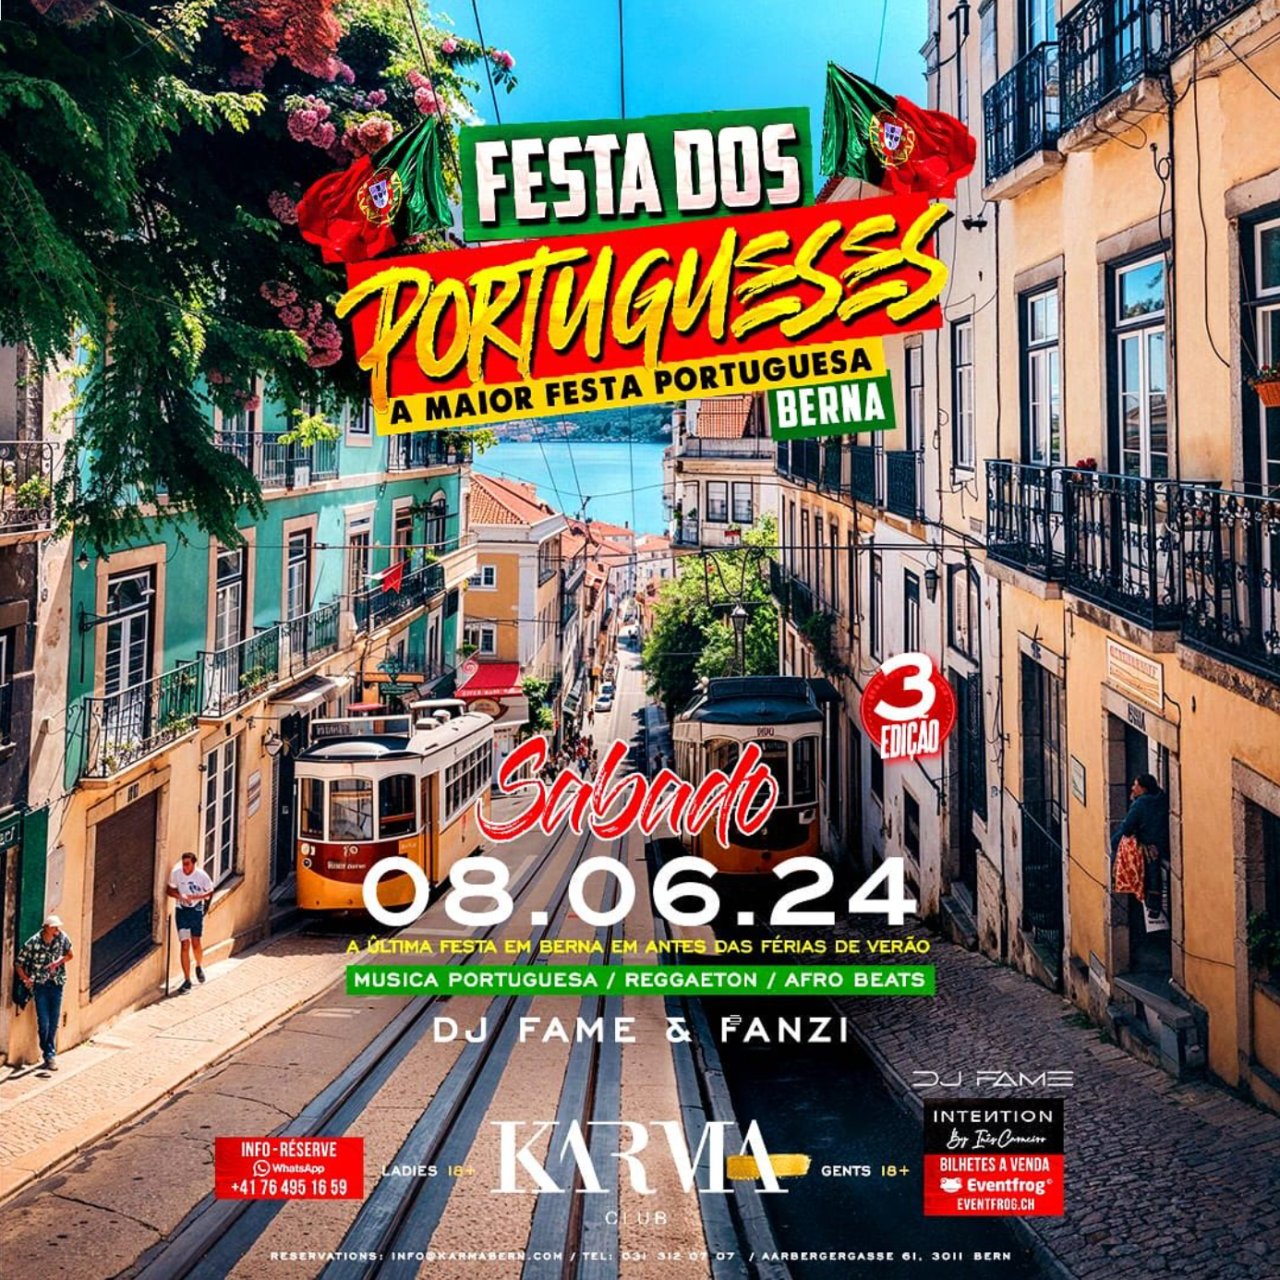 Festa-dos-portugueses-1280x1280.png